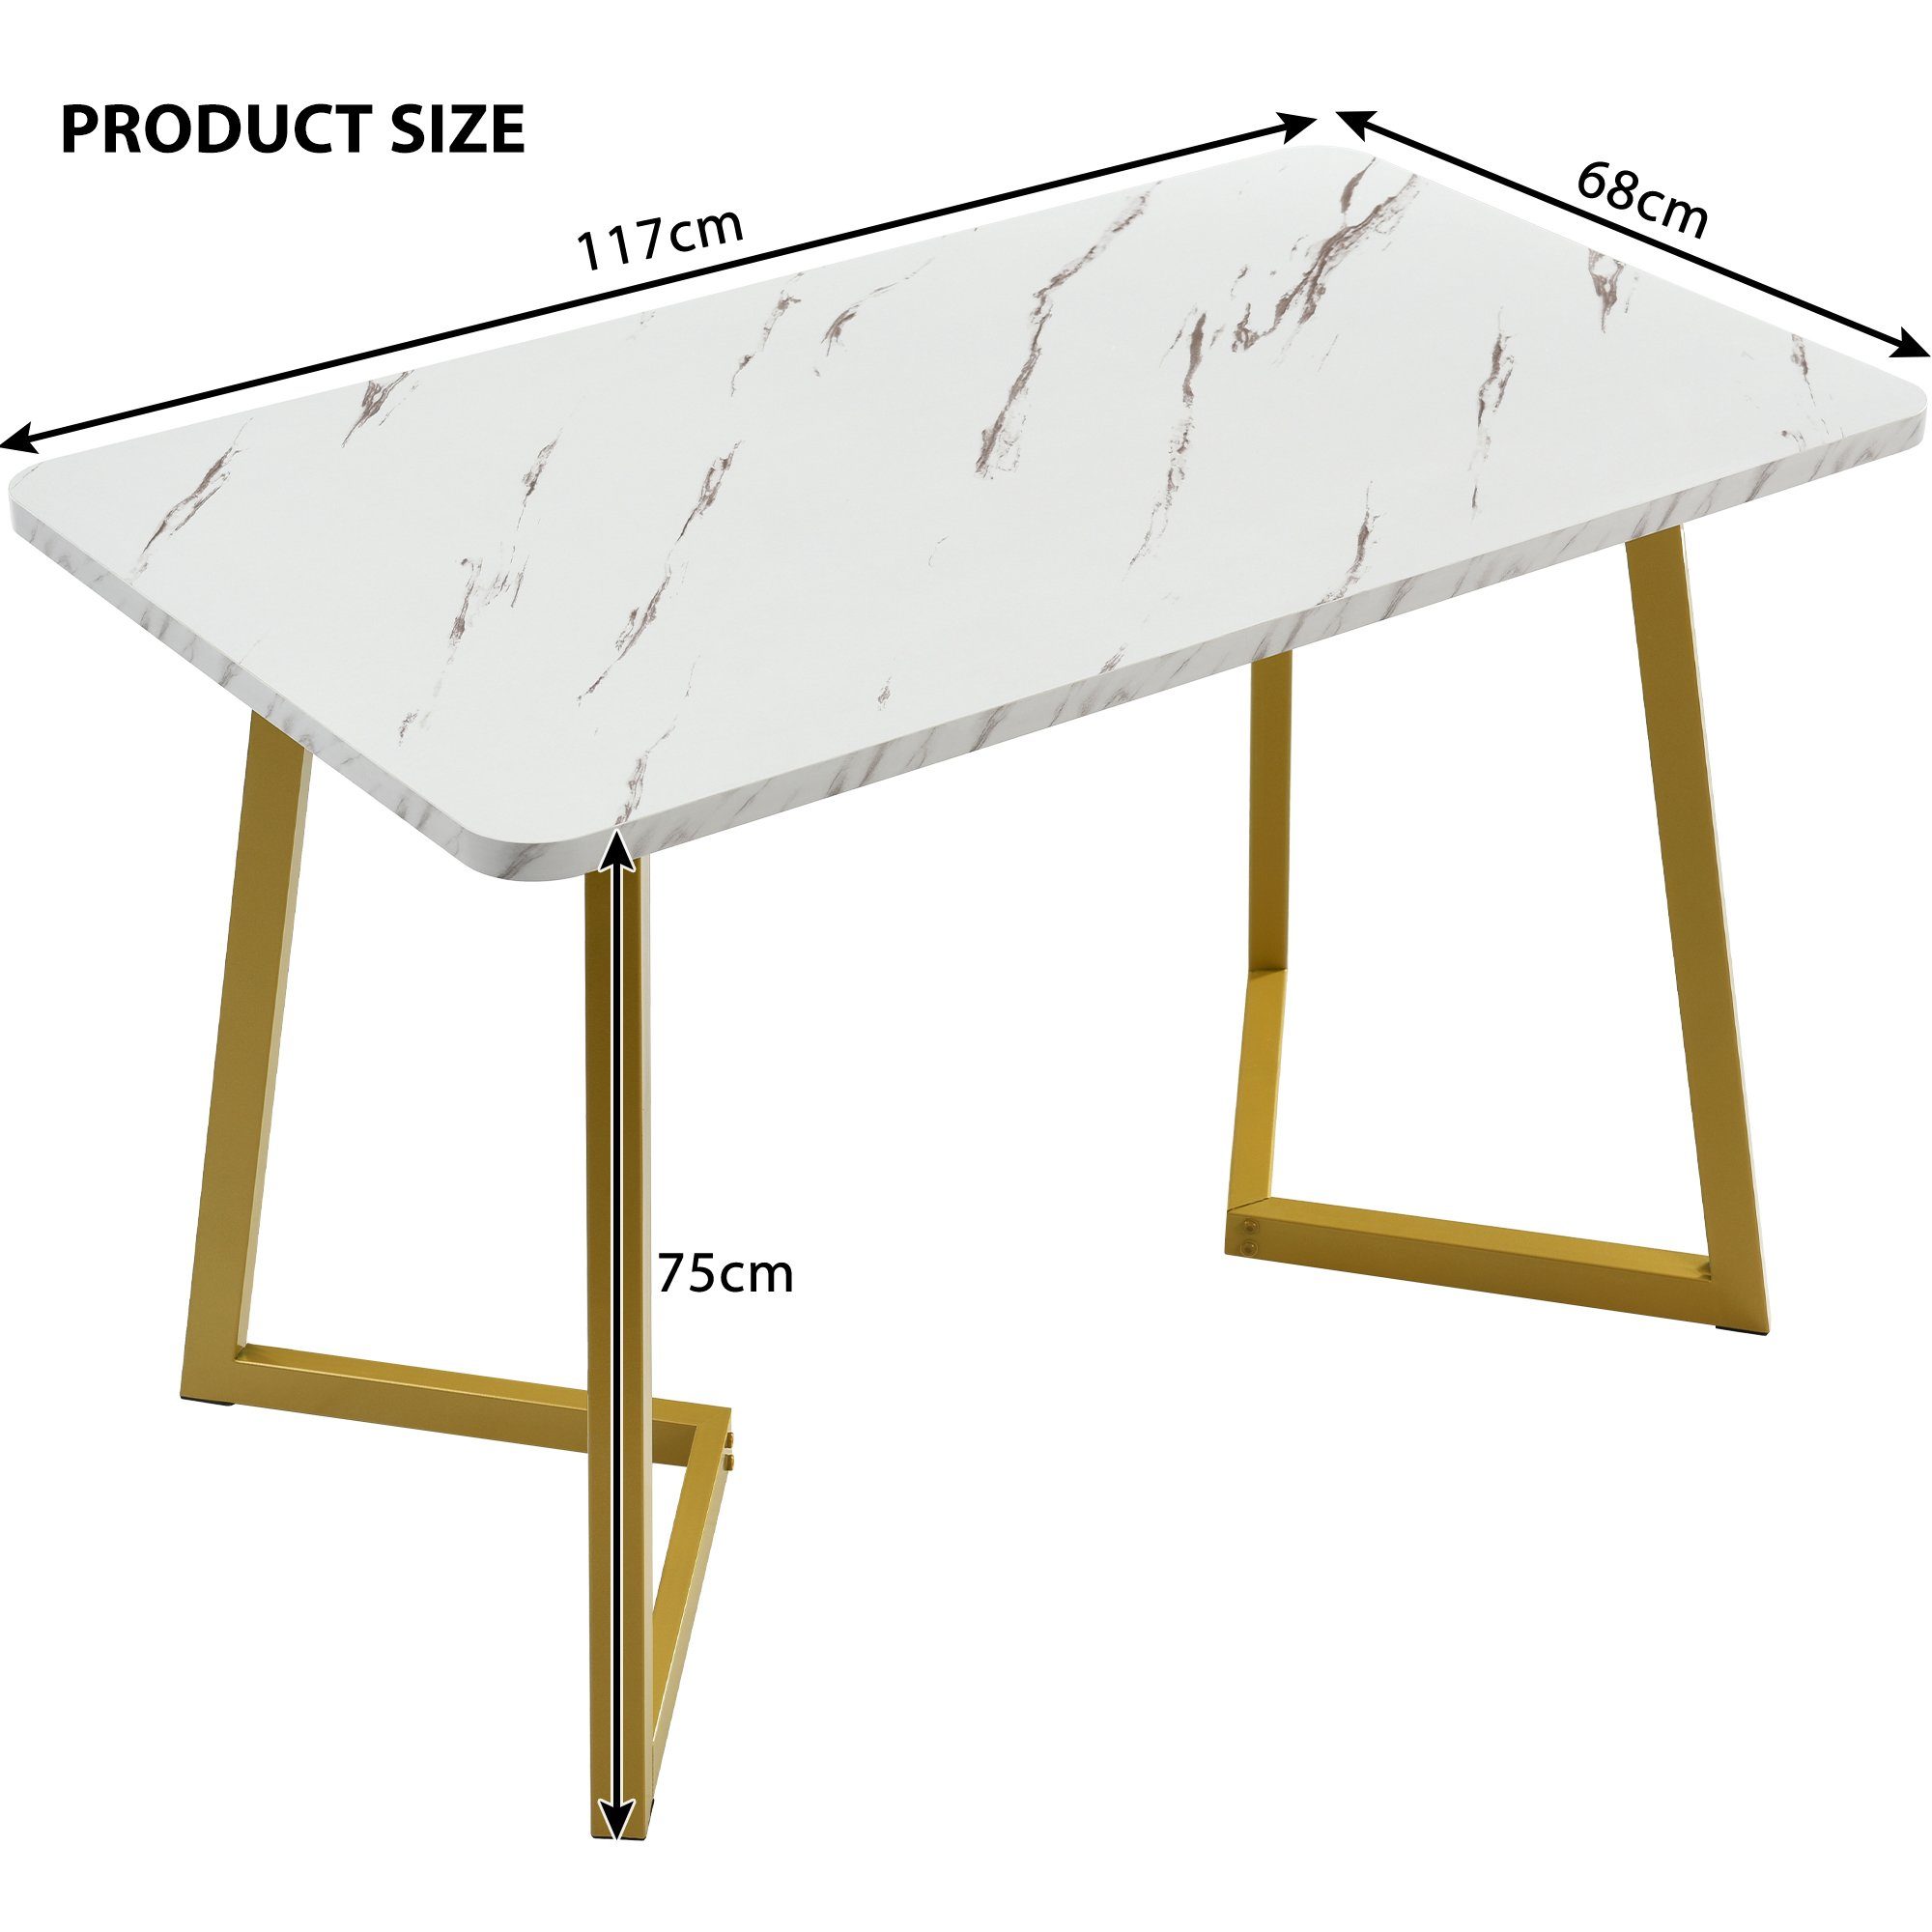 4 Tisch | (Set, Golden mit Ulife Stühlen) 5-tlg., Grau Essgruppe Diamantmuster, | Esszimmerstuhl Grau mit Esstisch, Rechteckiger